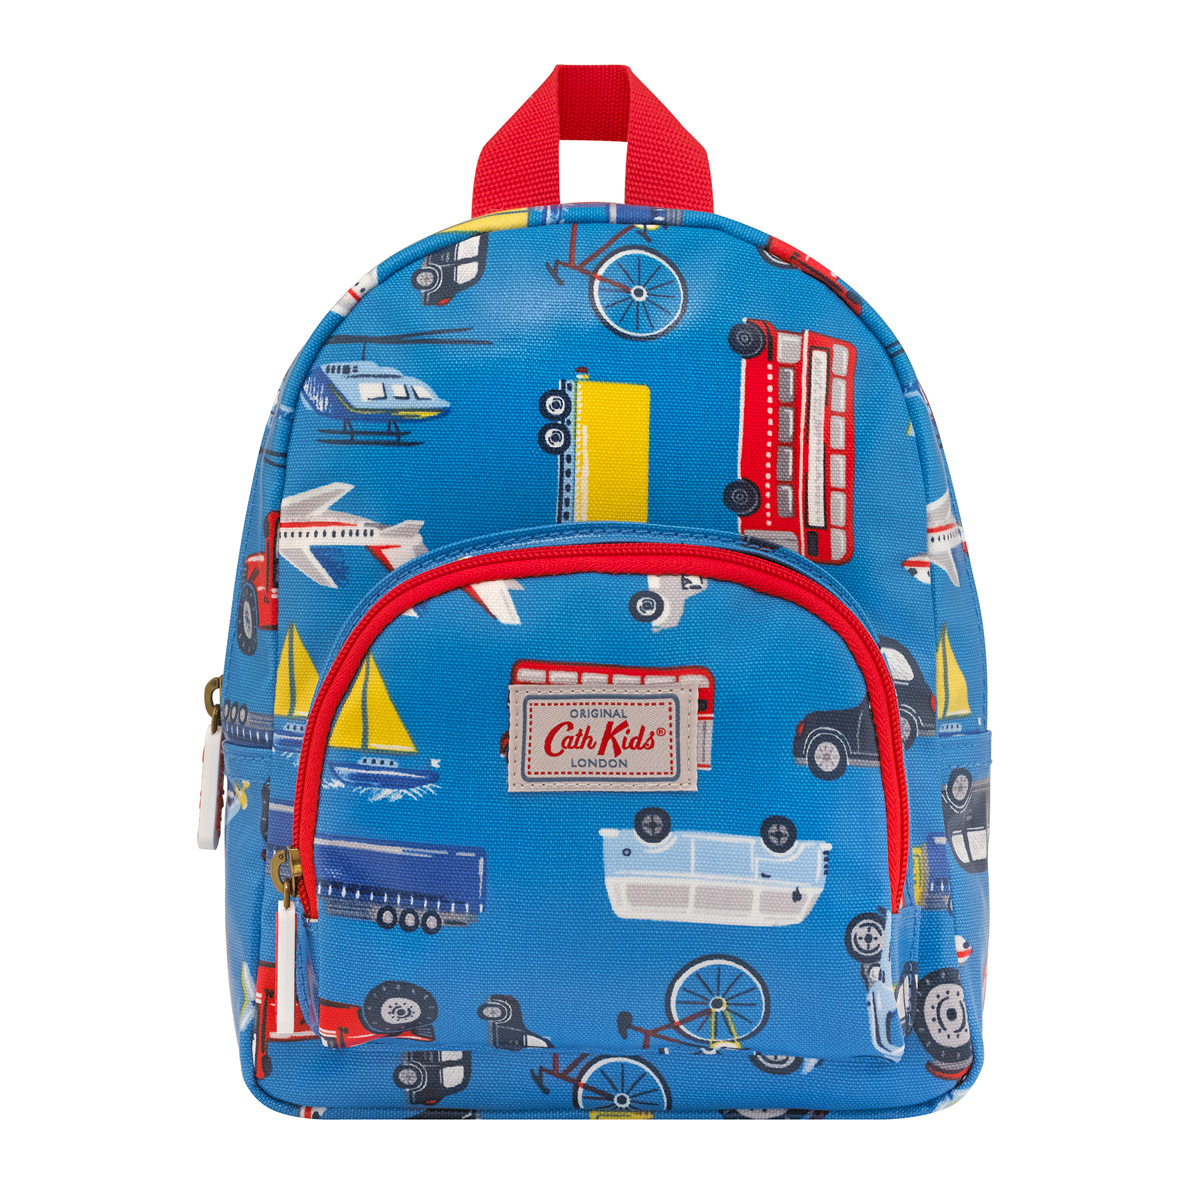 cath kidston kids backpack